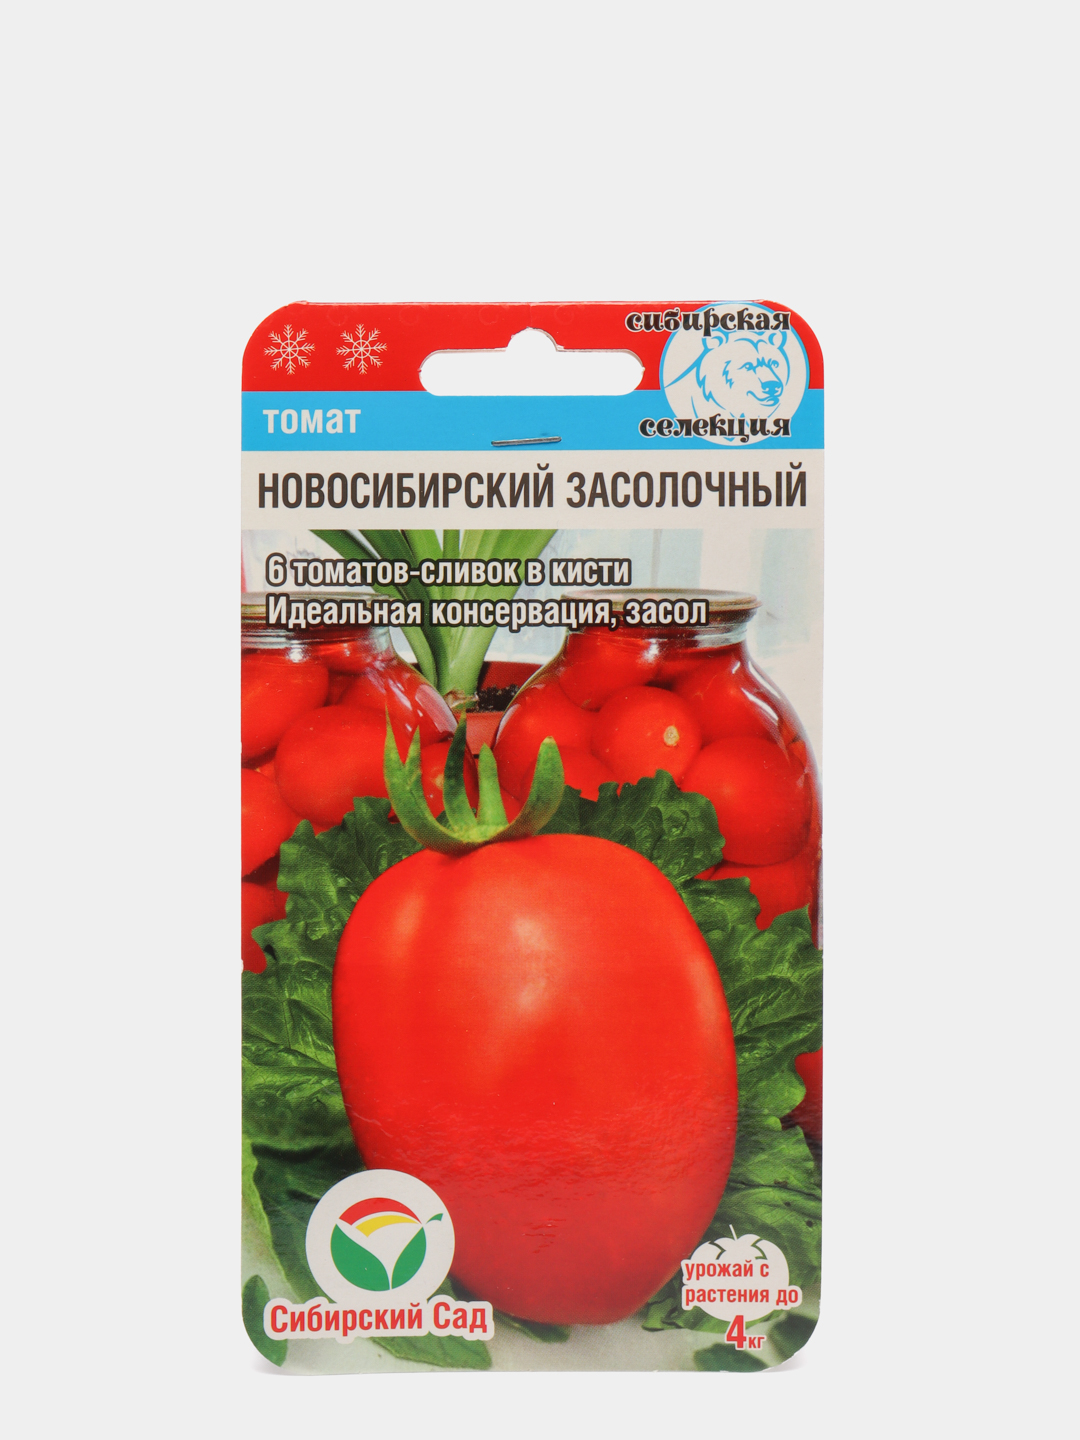 Непасынкующийся засолочный томат описание и фото